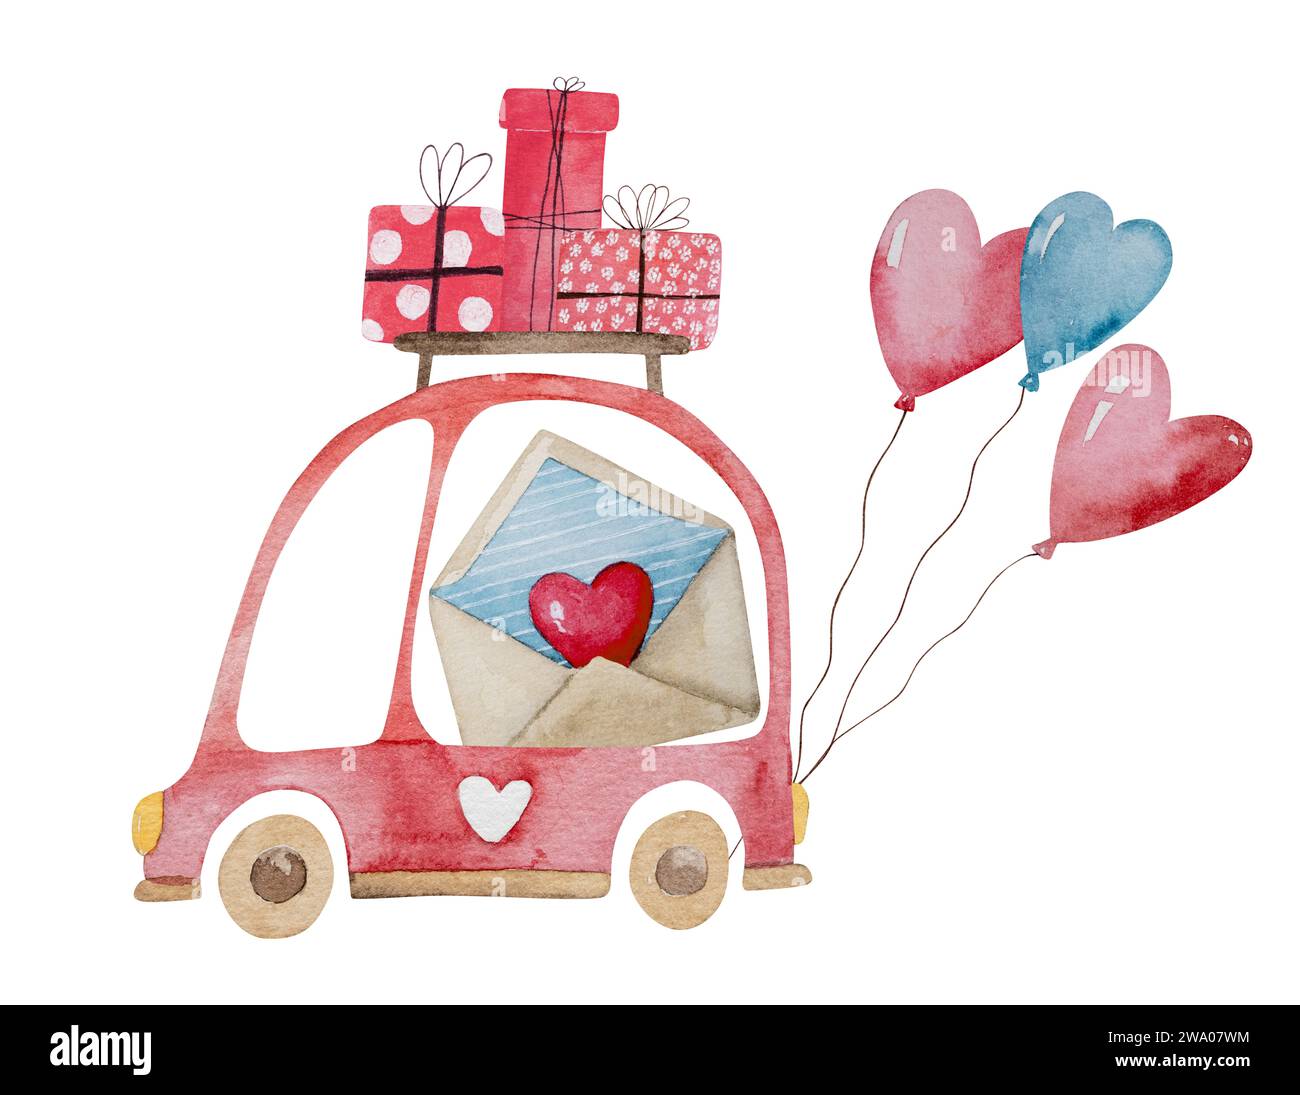 Clipart di illustrazione acquerello disegnato a mano a tema il 14 febbraio, con Un'auto con regali e palloncini per San Valentino e Una casa su ruote con regali Foto Stock